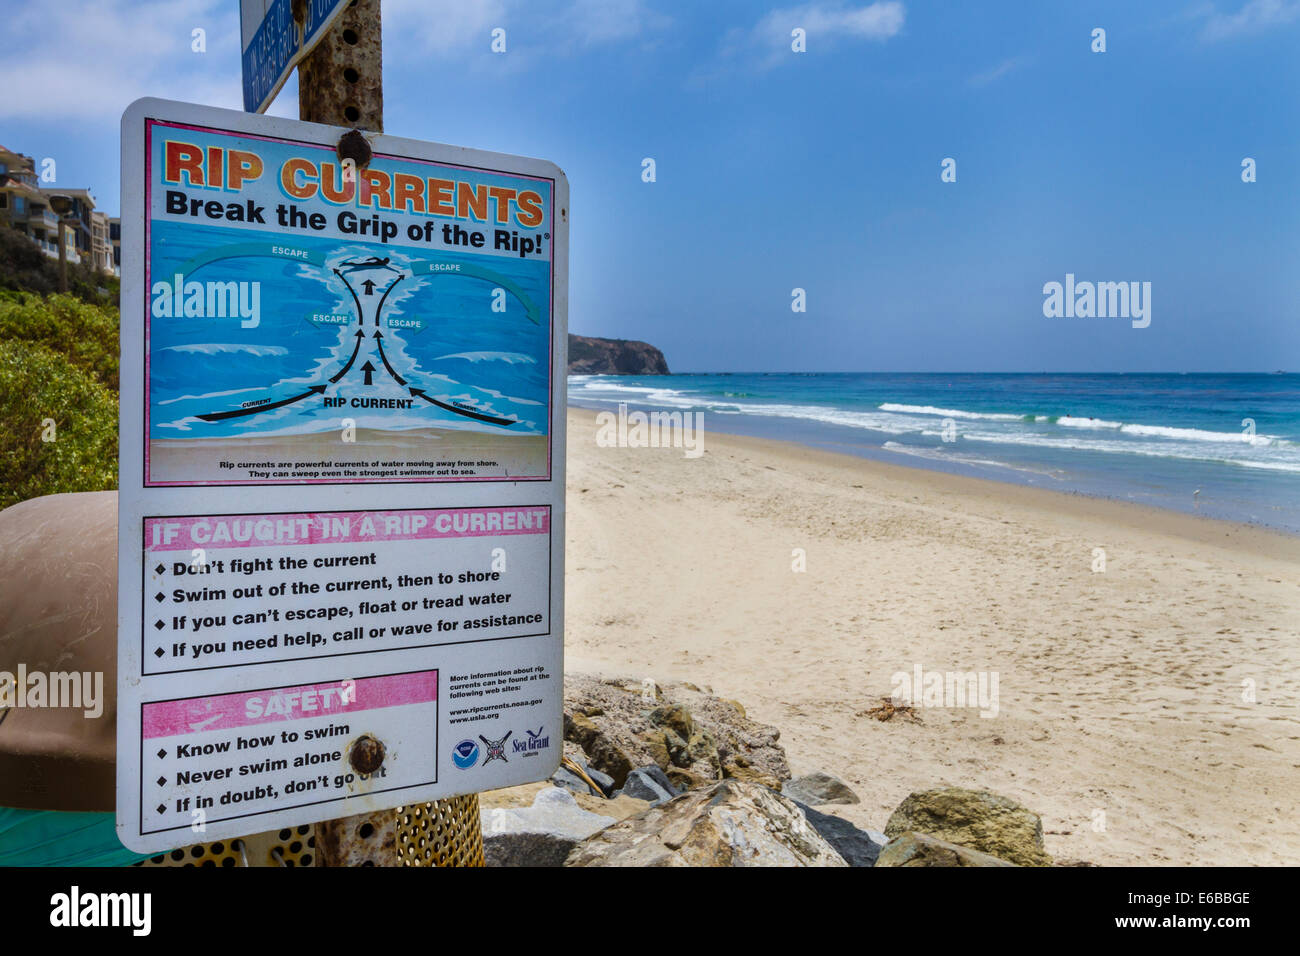 États-unis, Californie, Dana Point. Un panneau met en garde contre les courants forts dans l'océan Pacifique au large de la Californie. Banque D'Images